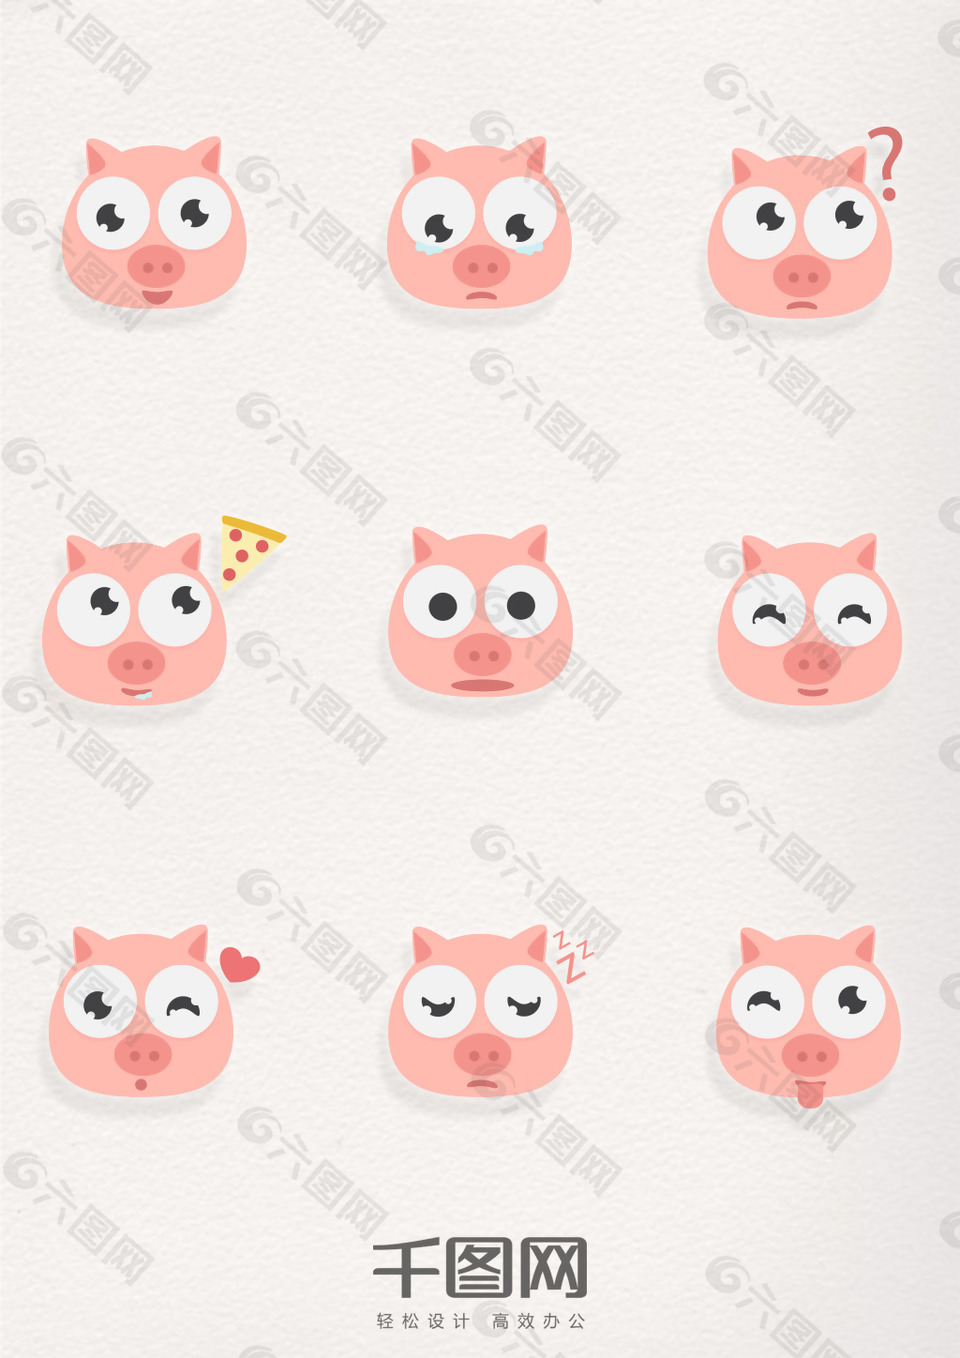 可爱卡通粉色猪表情图标